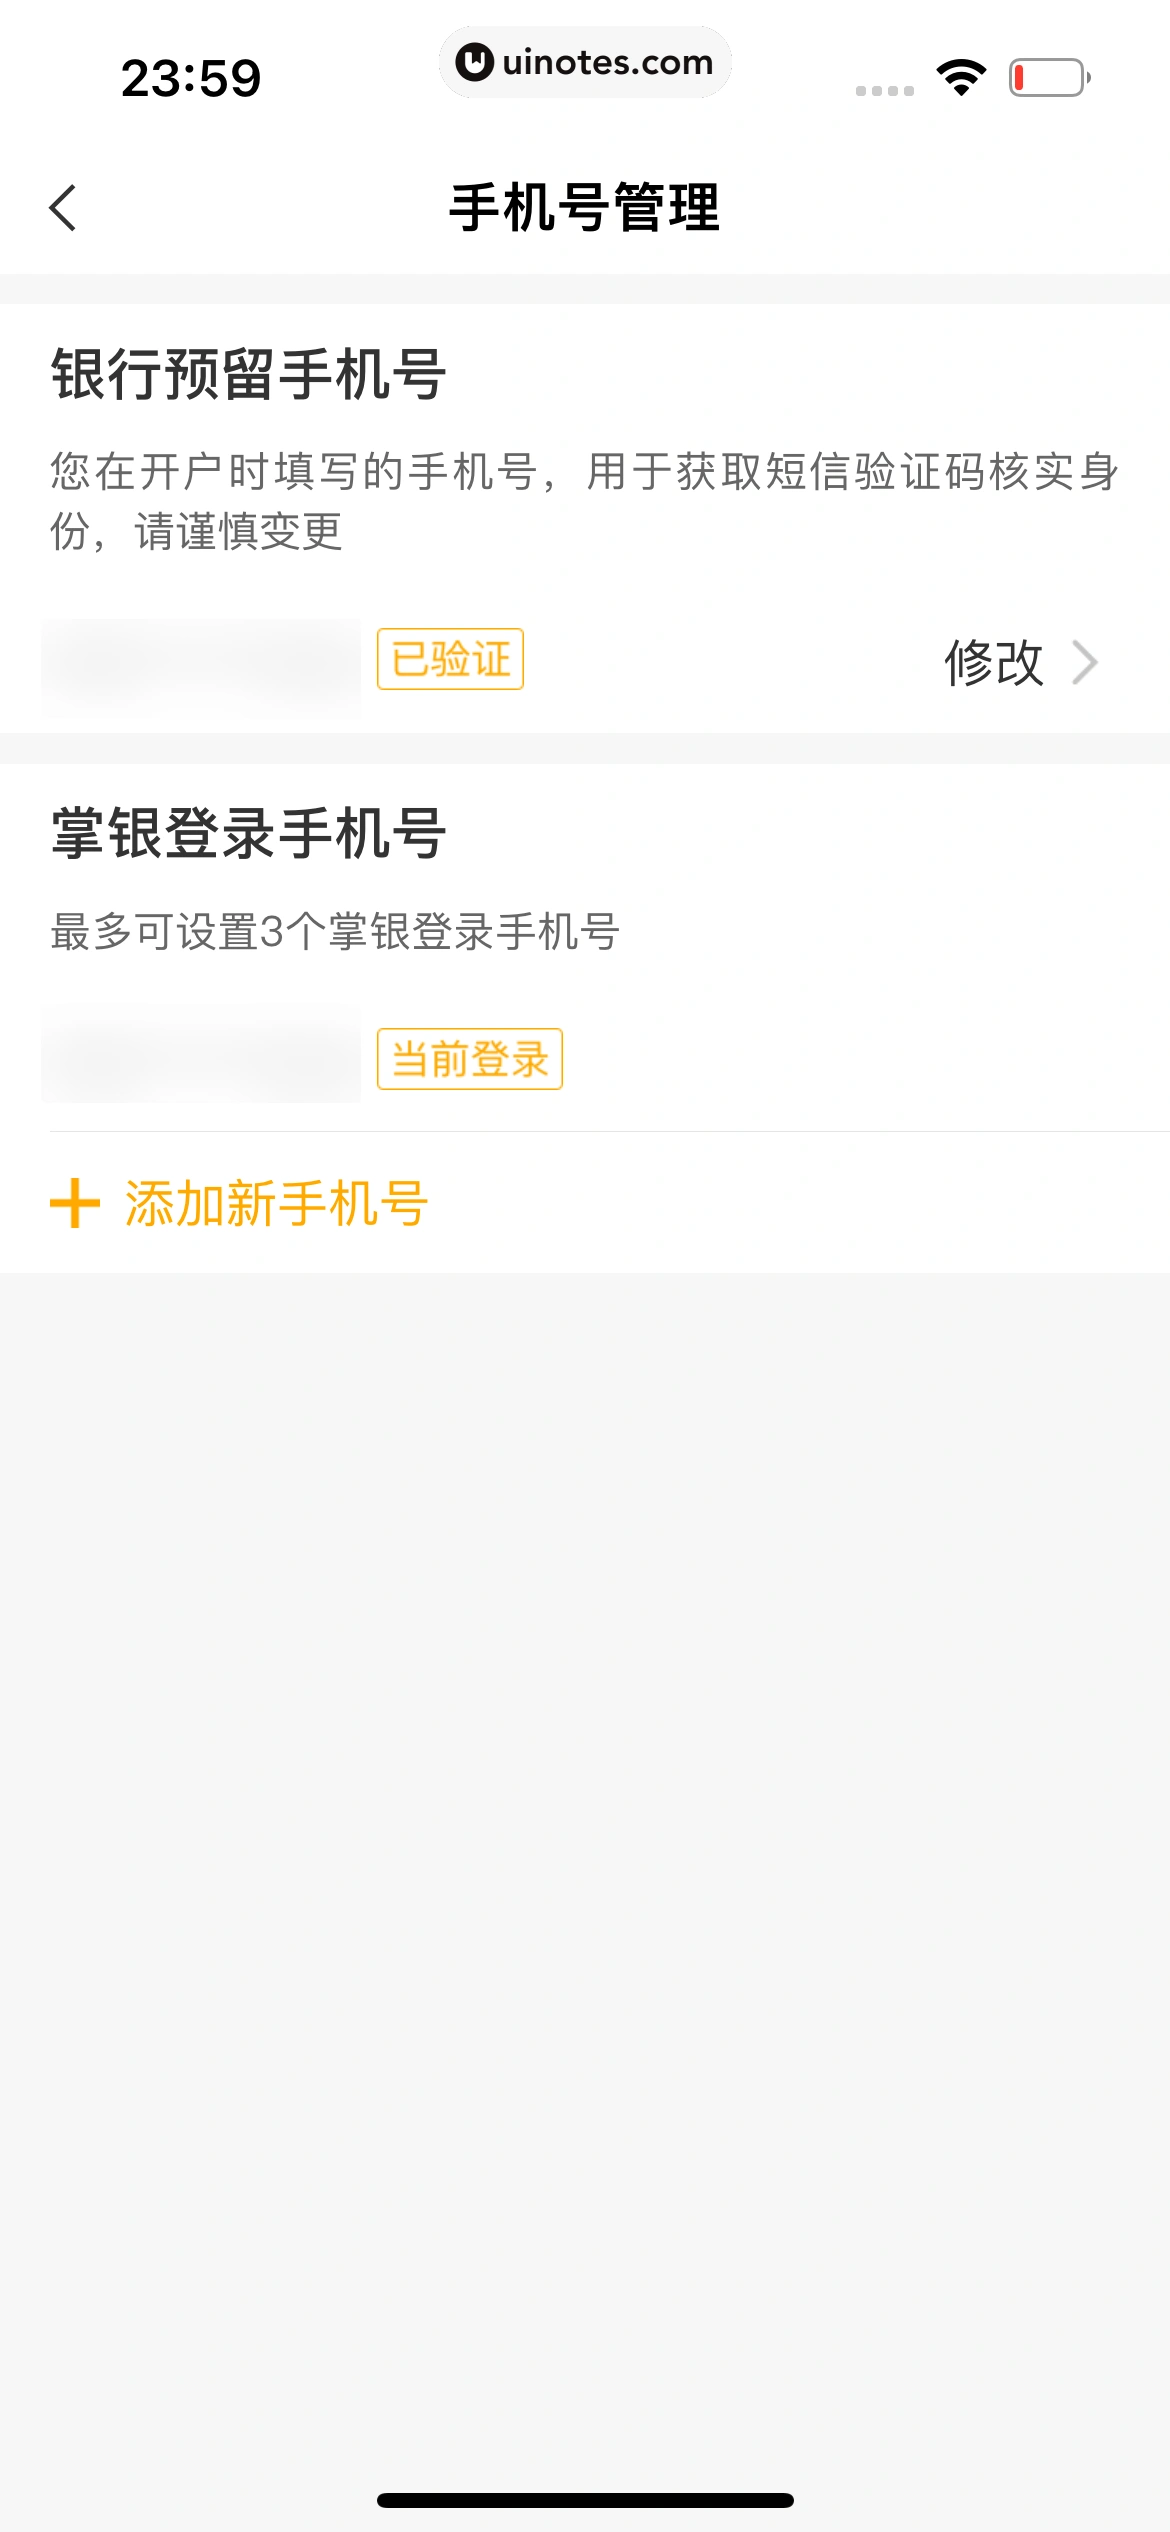 中国农业银行 App 截图 255 - UI Notes